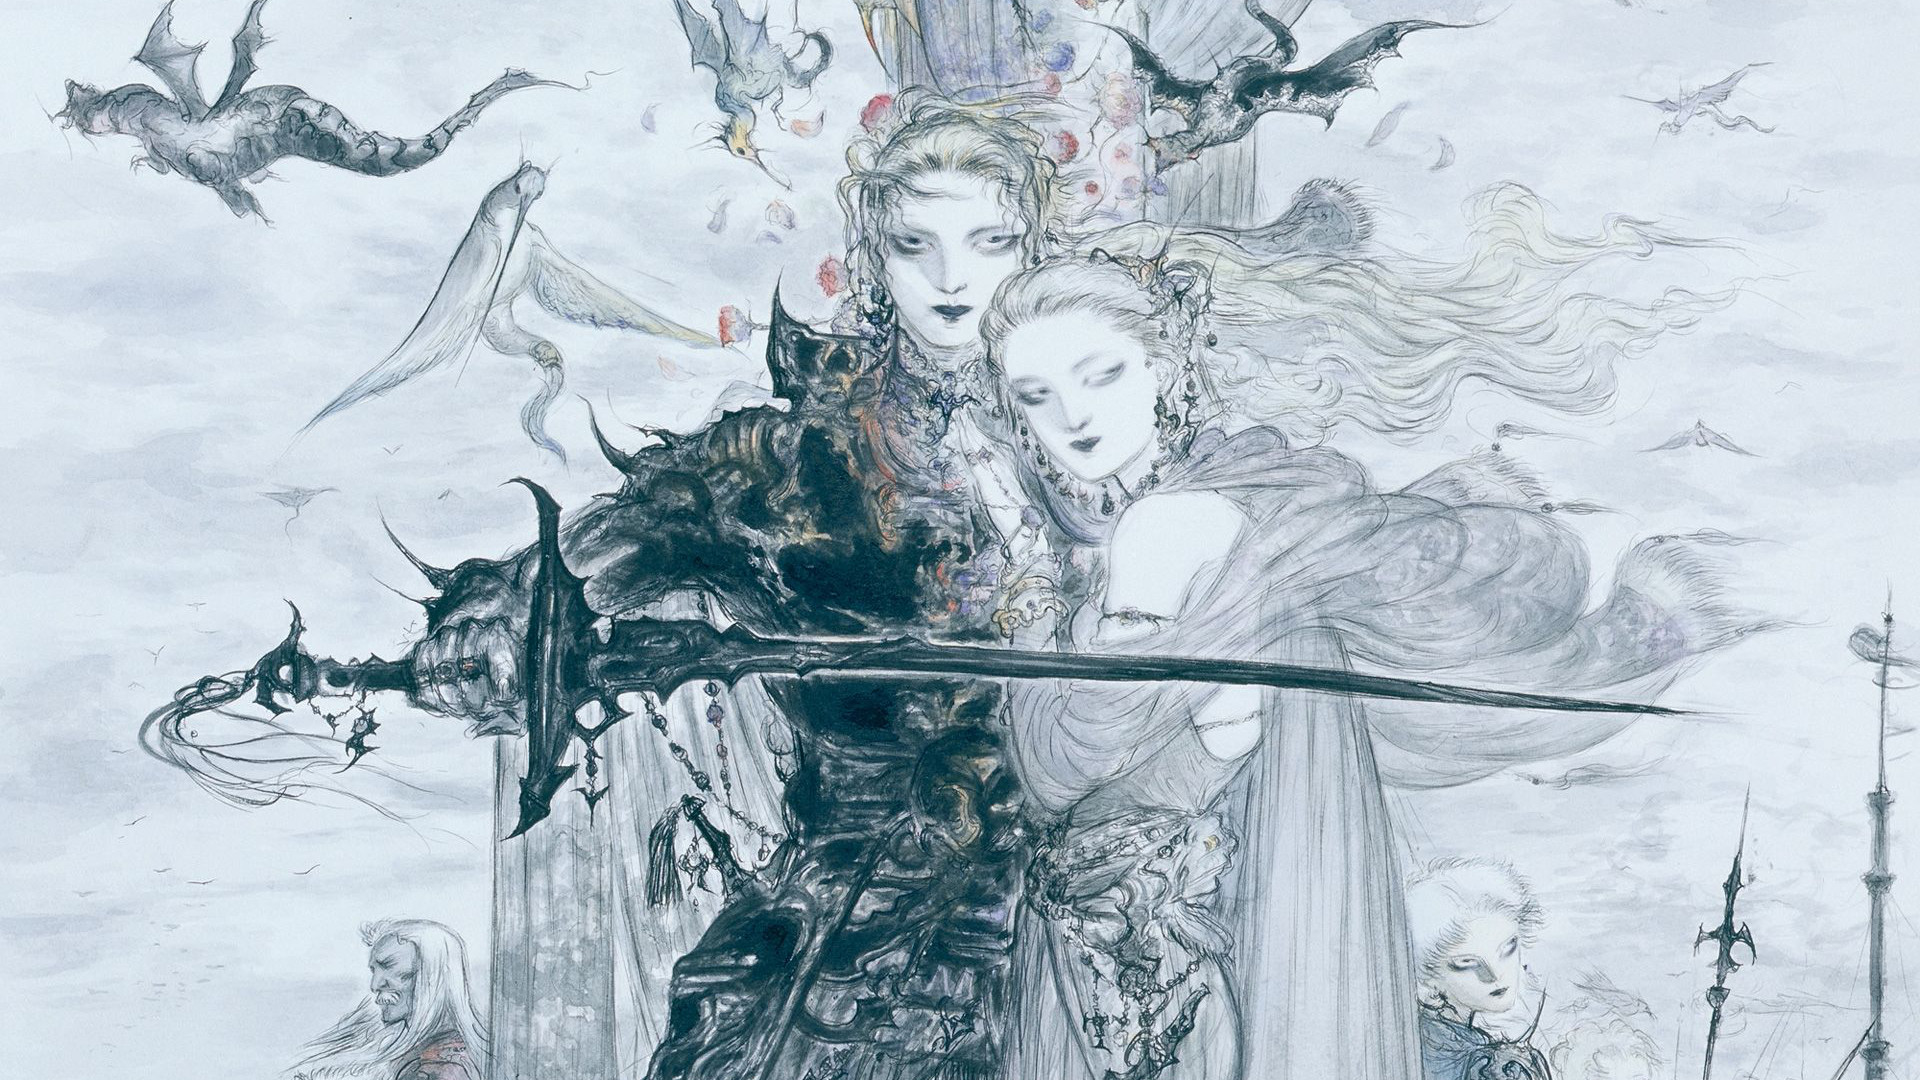 Video Game Final Fantasy V HD Wallpaper | Background Image